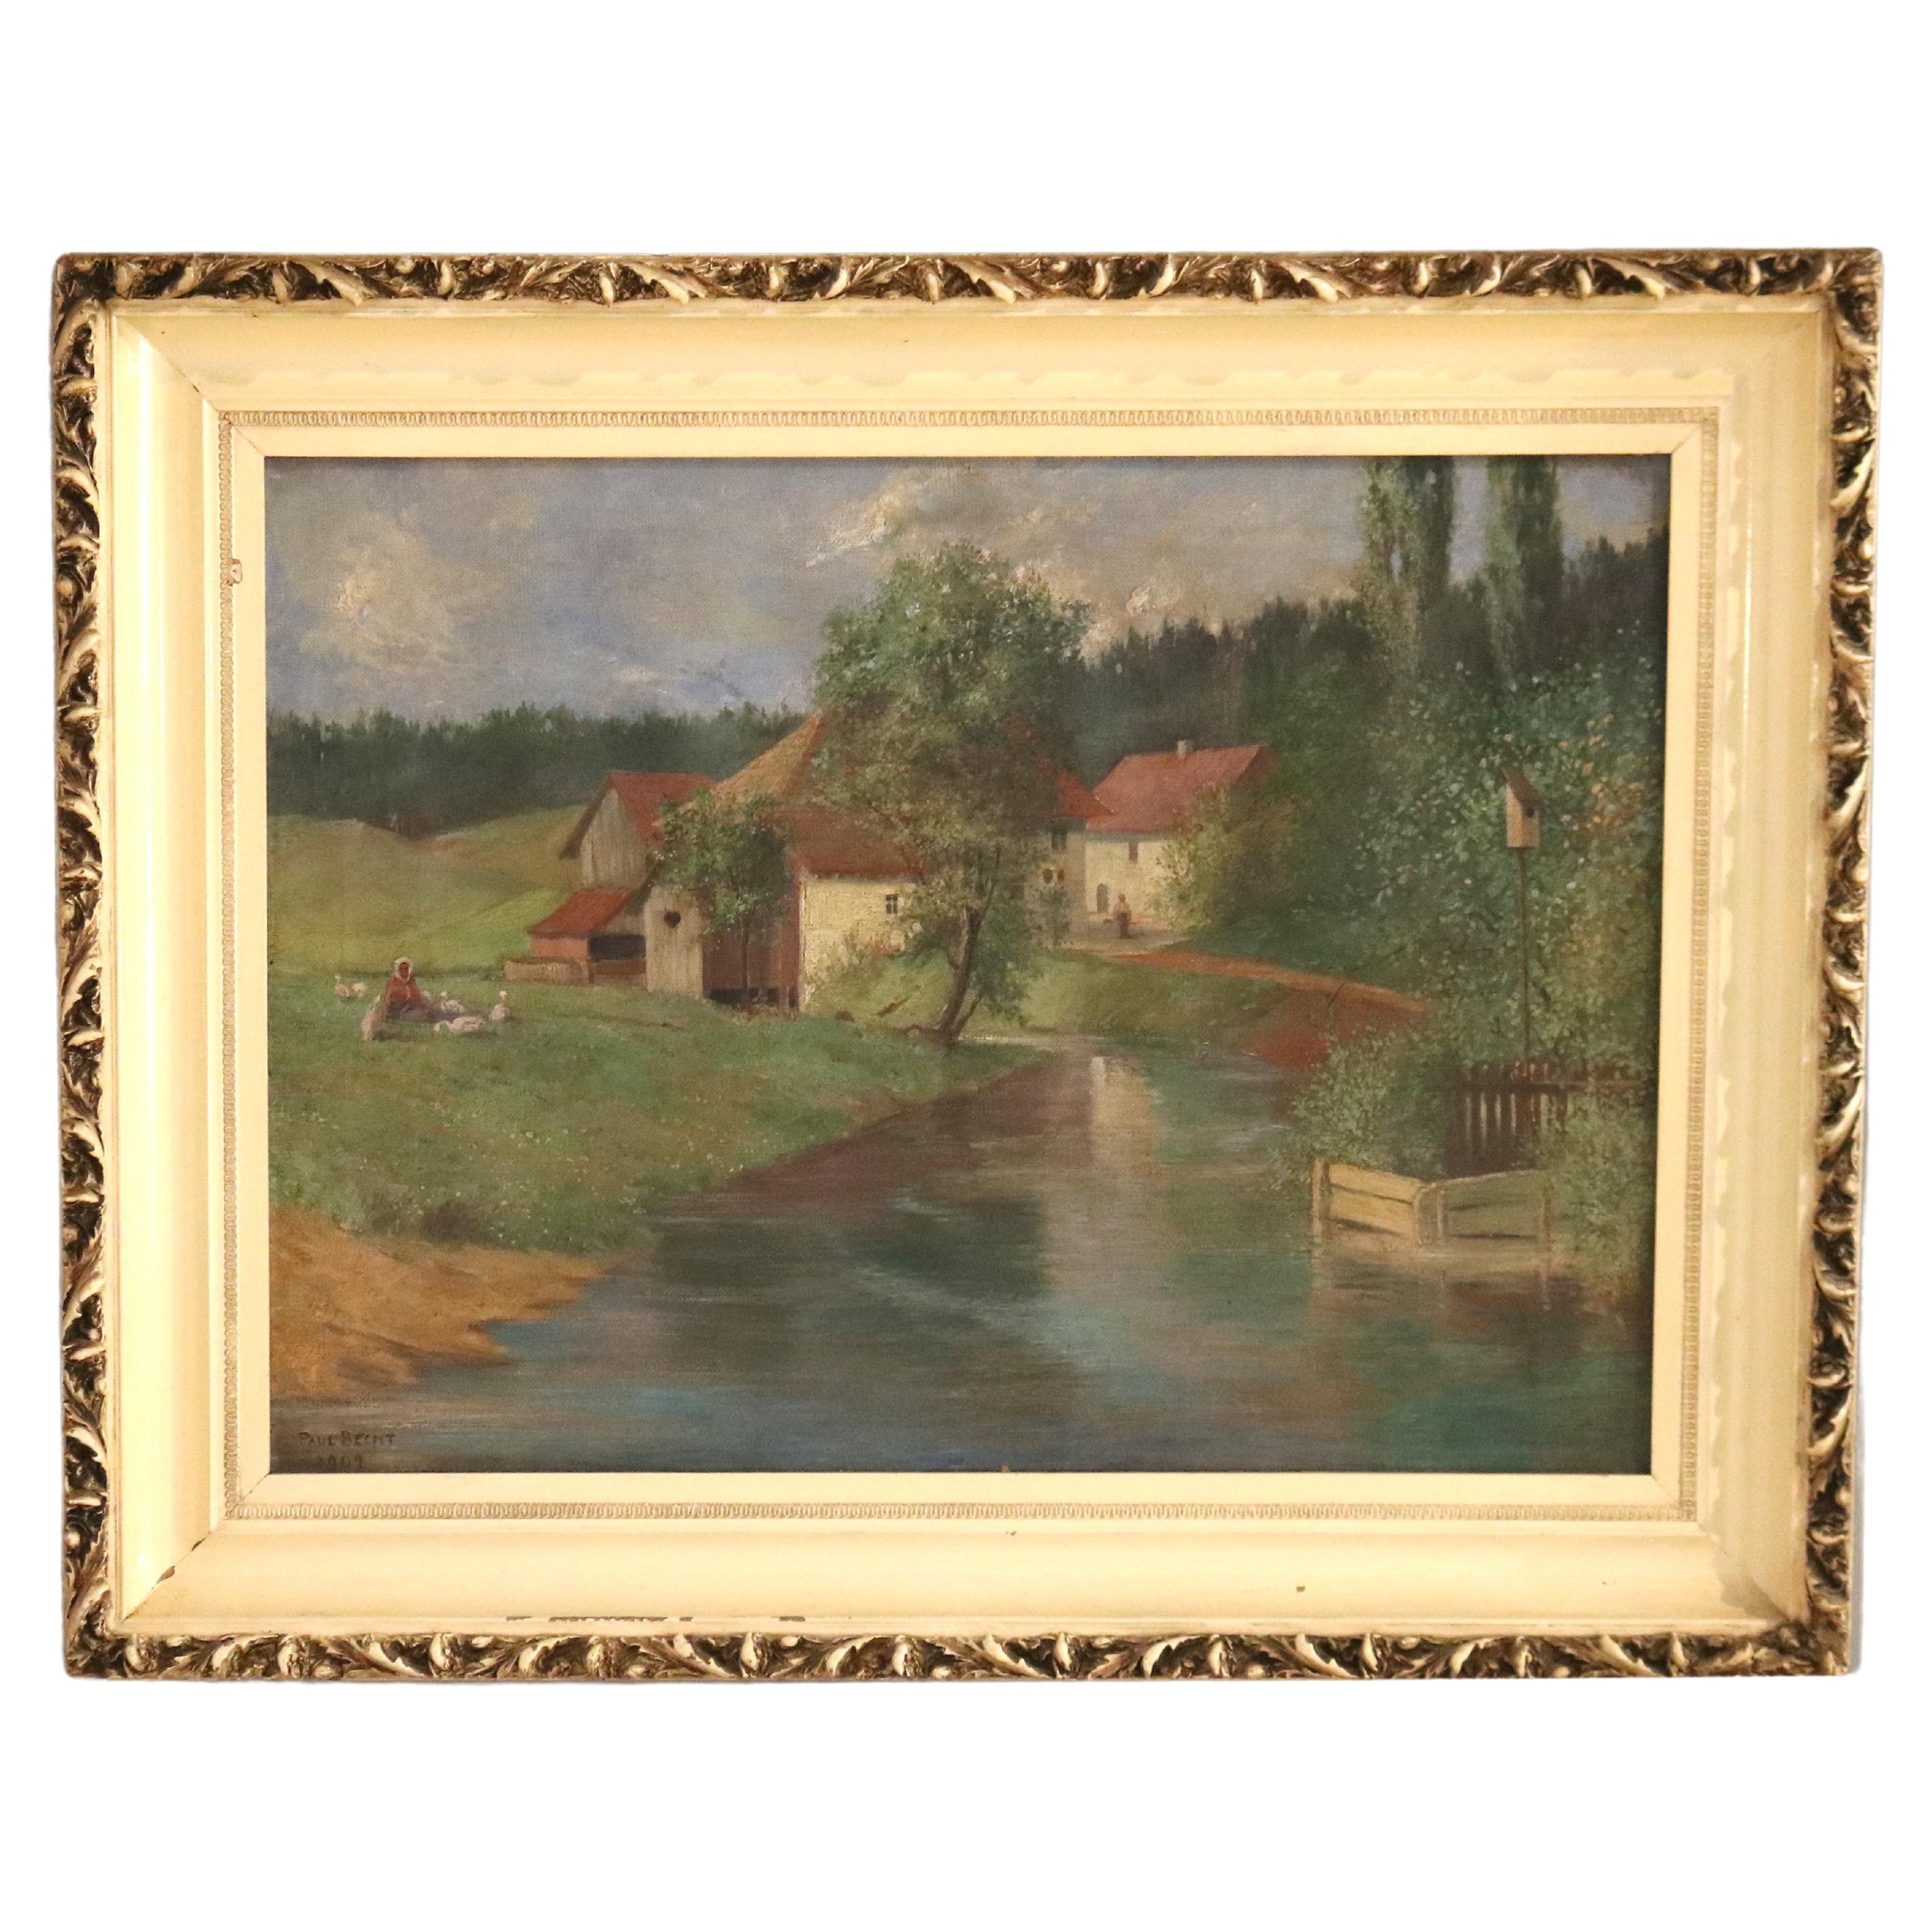 Antique Oil on Canvas Landscape Painting, Farm Scene, Signed Brecht, 1907